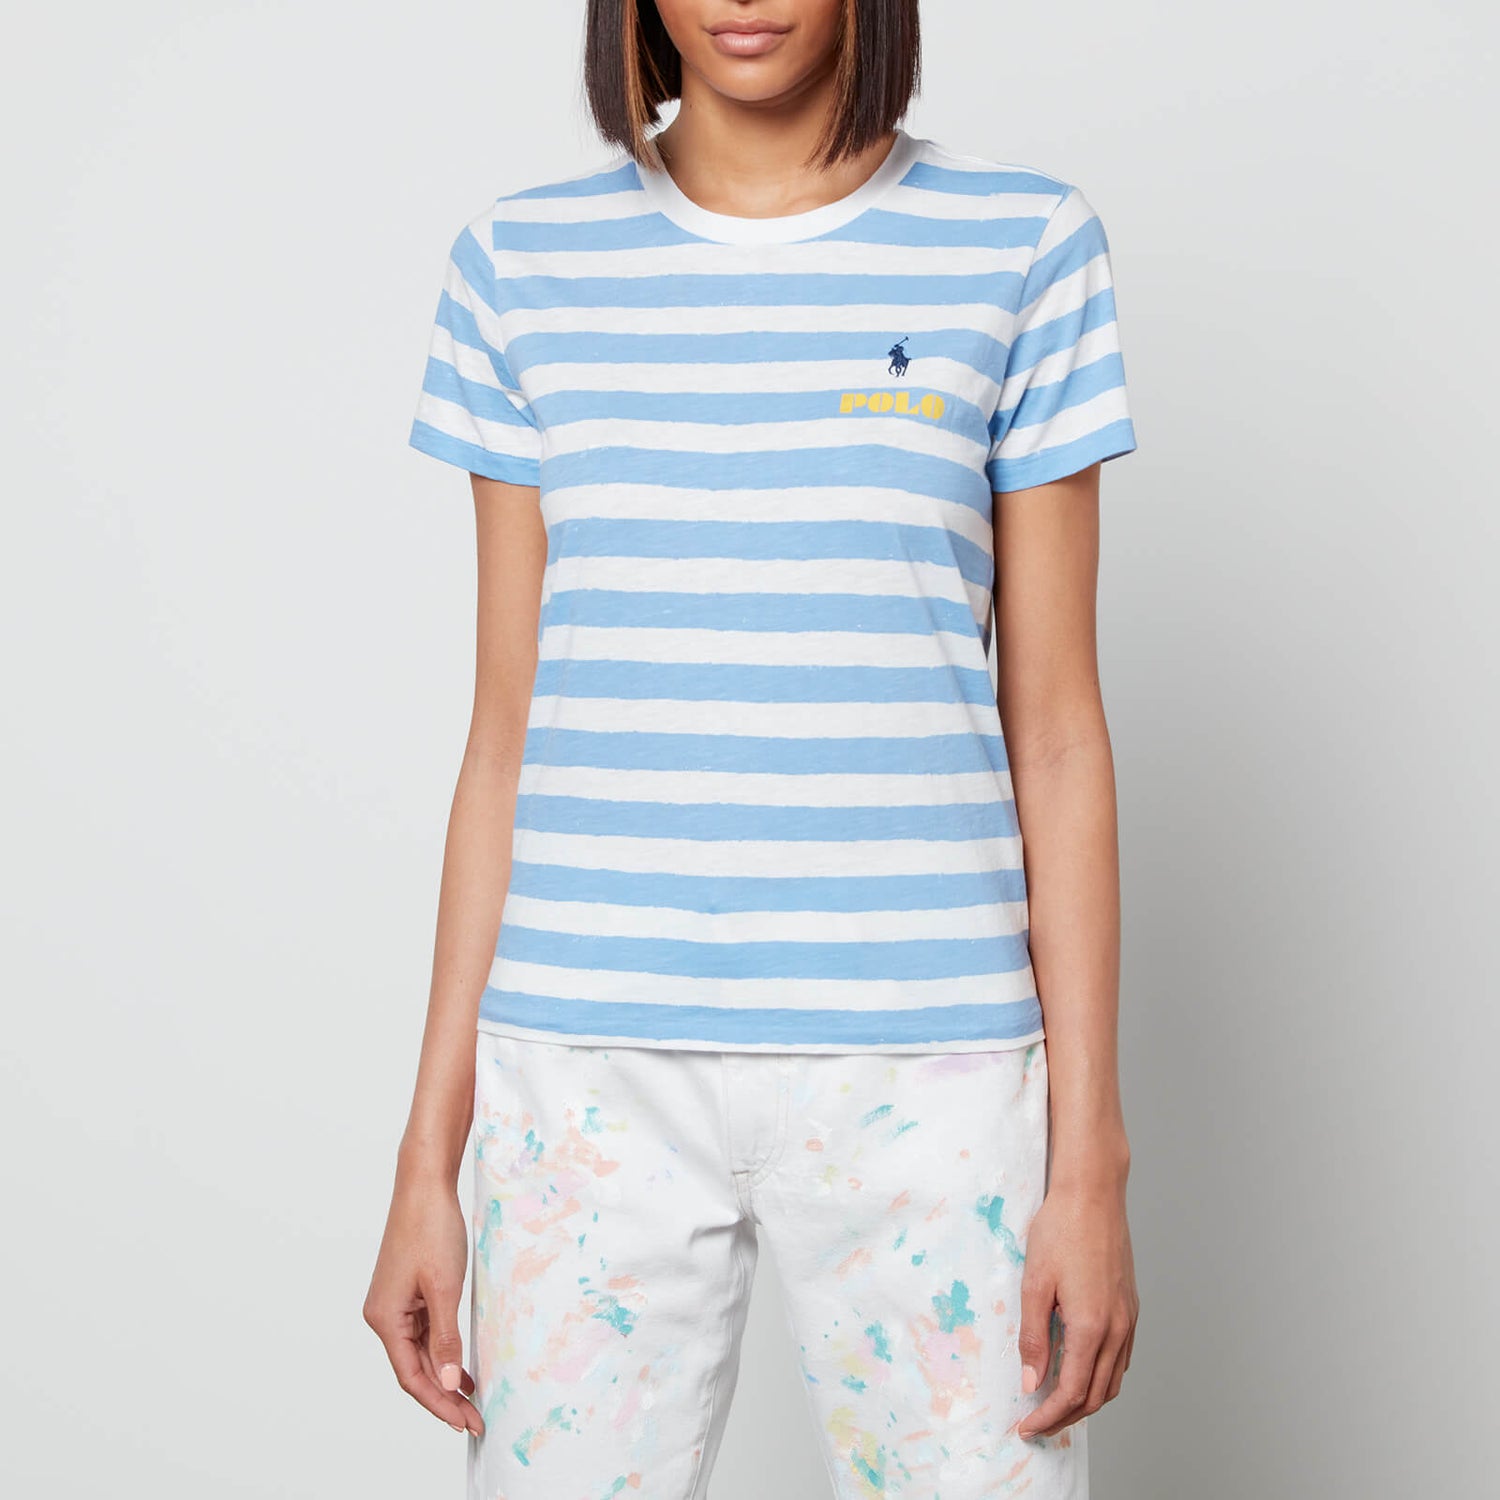 Polo Ralph Lauren Women's Stripe Short Sleeve T-Shirt - Blue/White Stripe - S